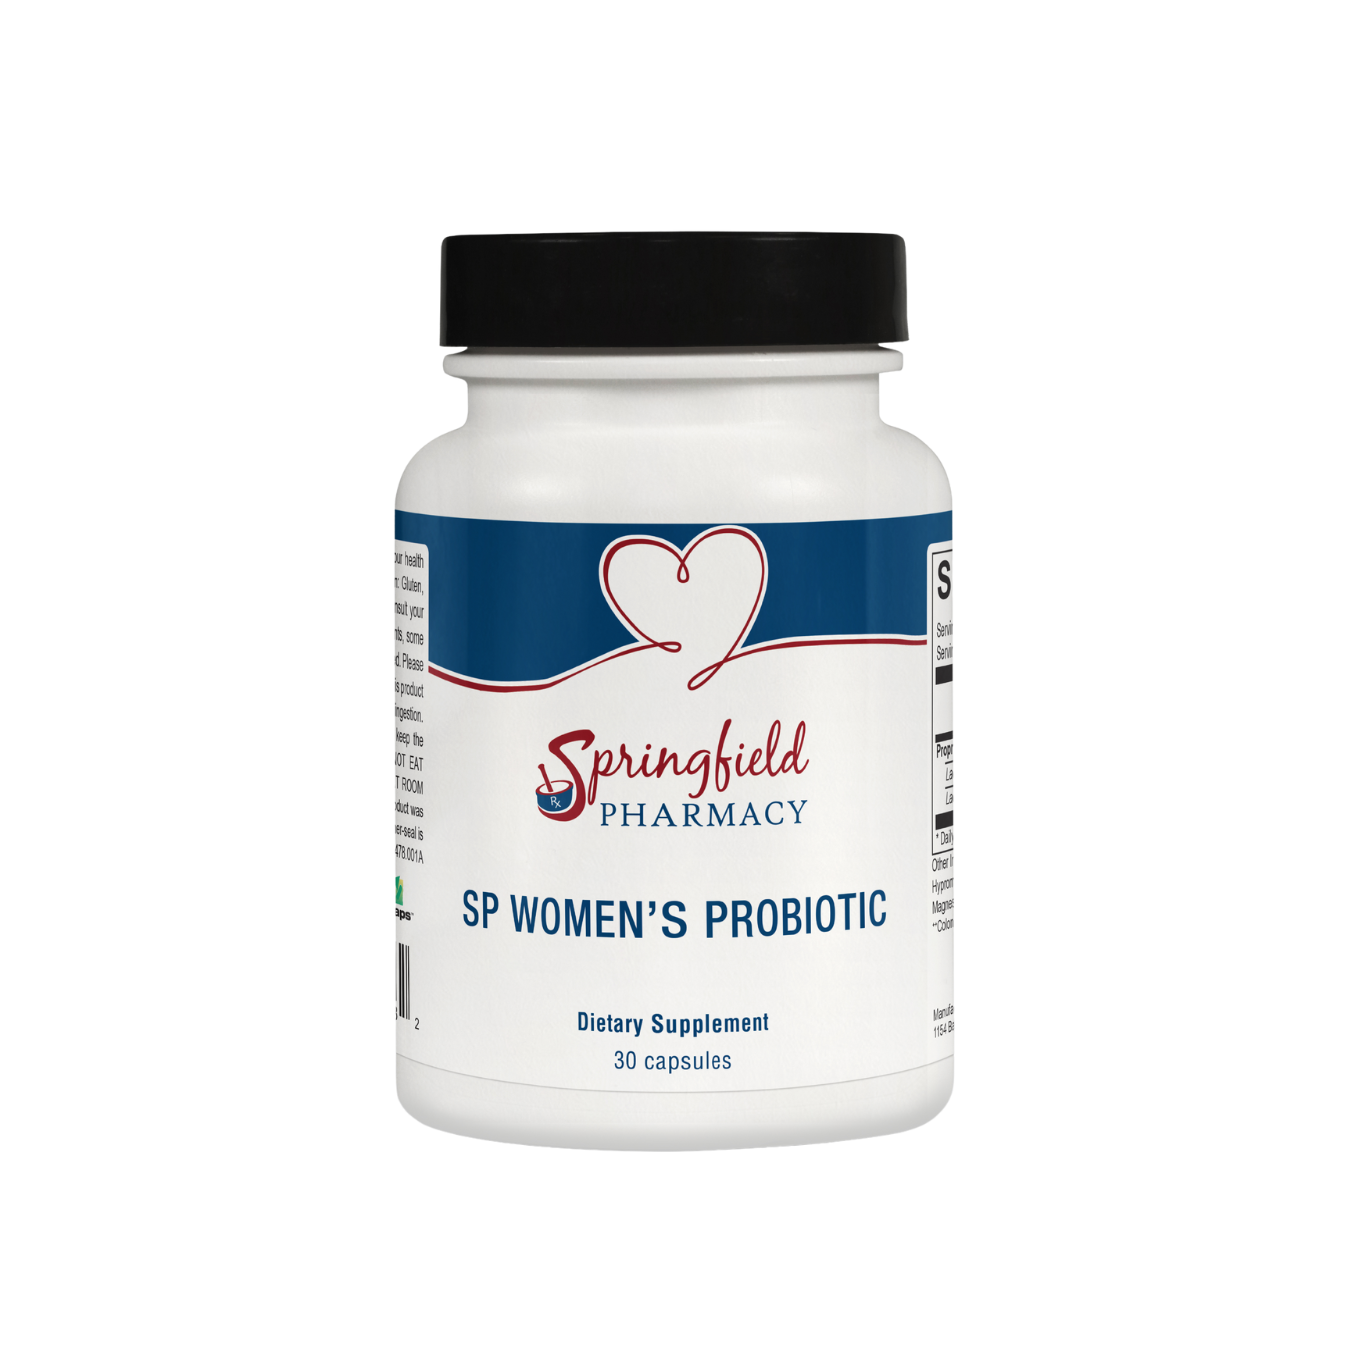 SP Women’s Probiotic